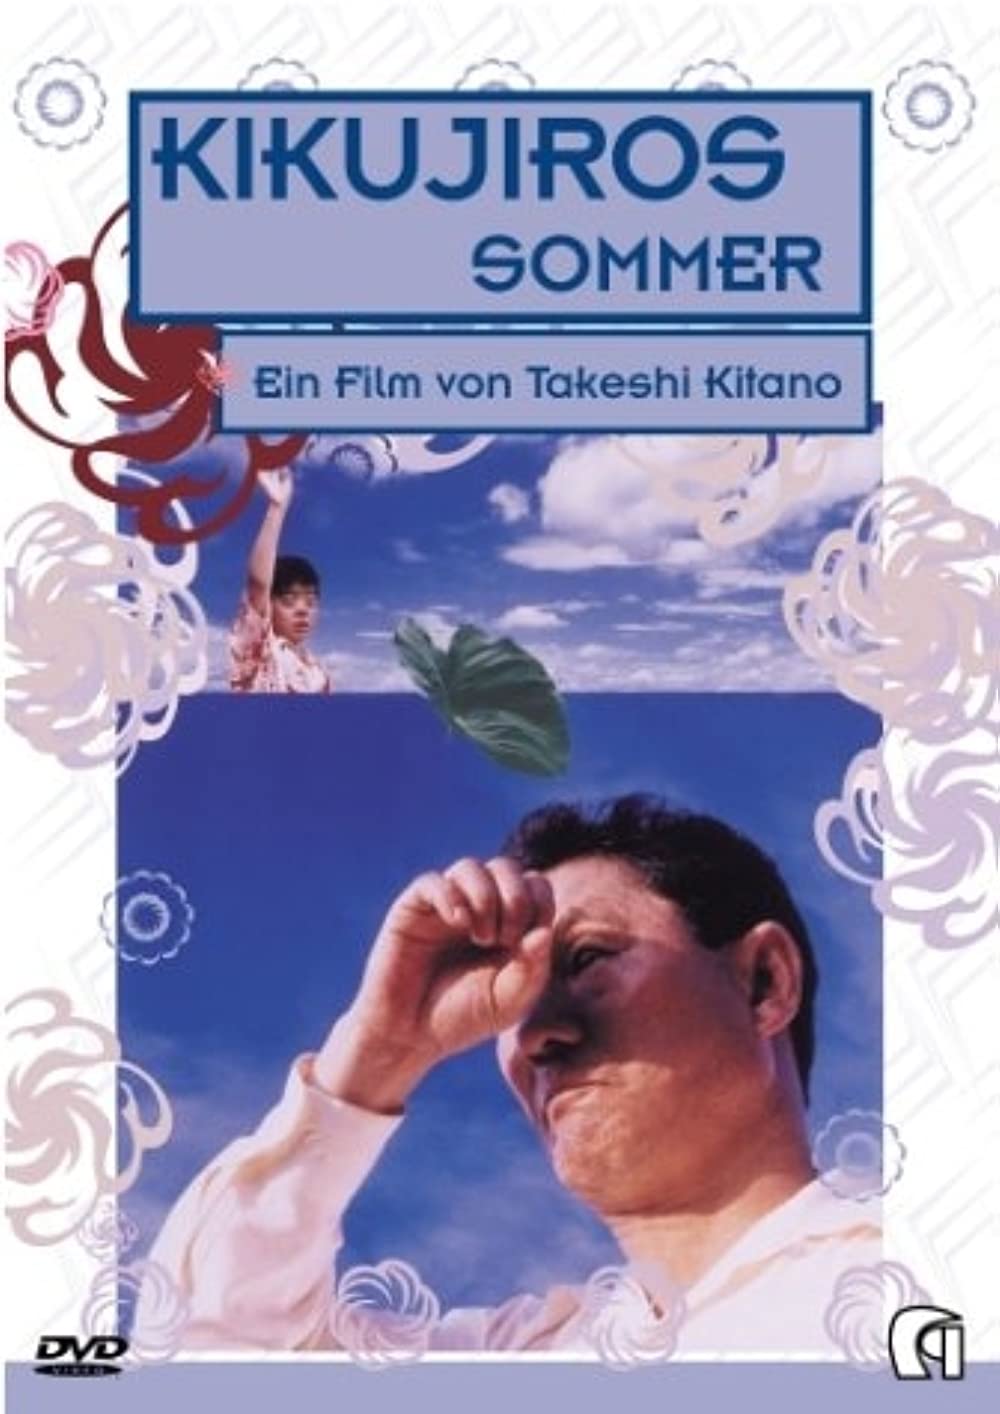 Filmbeschreibung zu Kikujiros Sommer